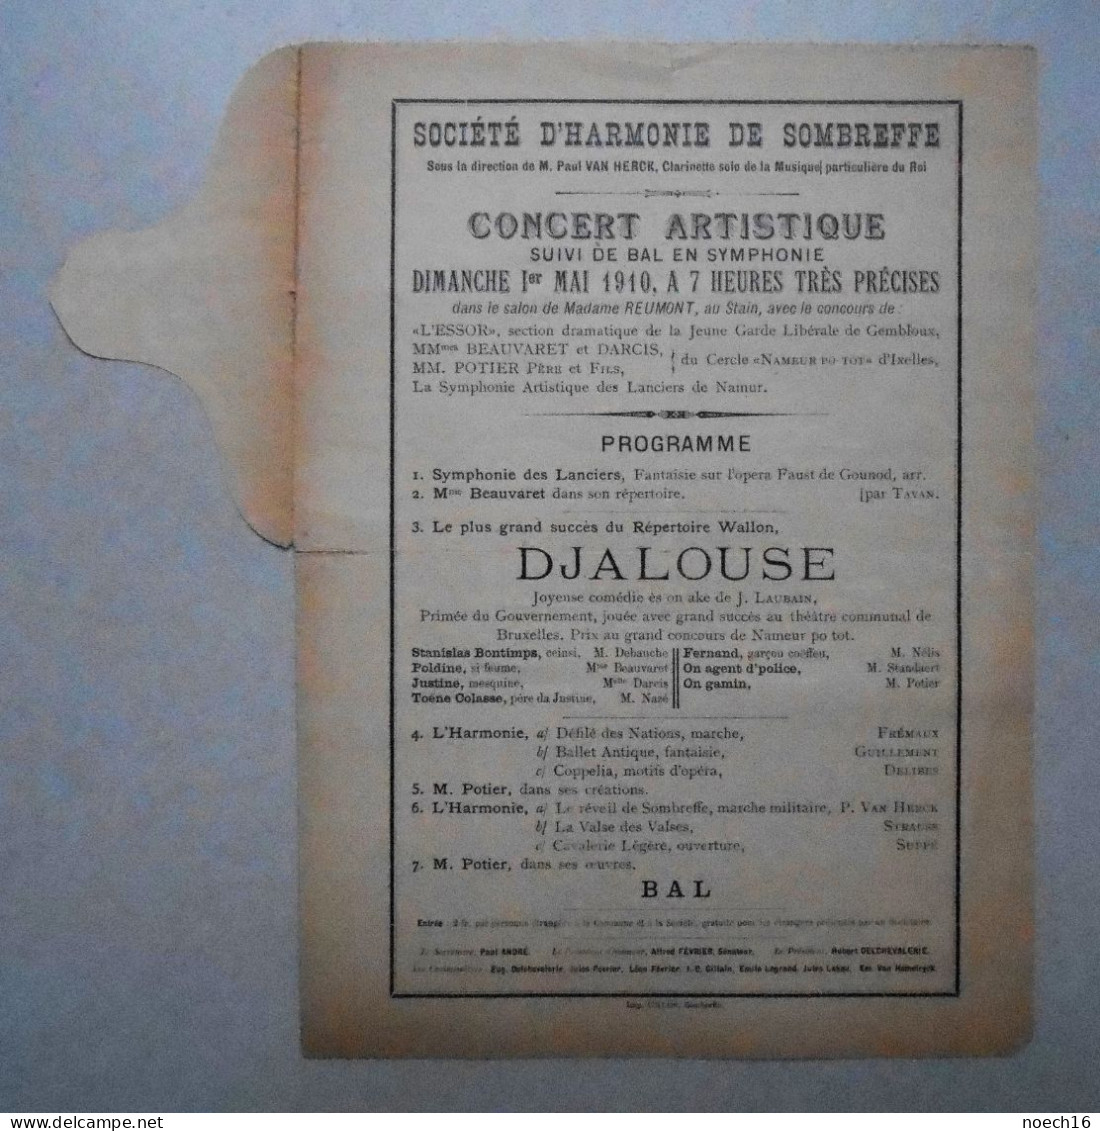 Programme 1910 Société D'Harmonie De Sombreffe. Concert Artistique Suivi De Bal En Symphonie - Programme